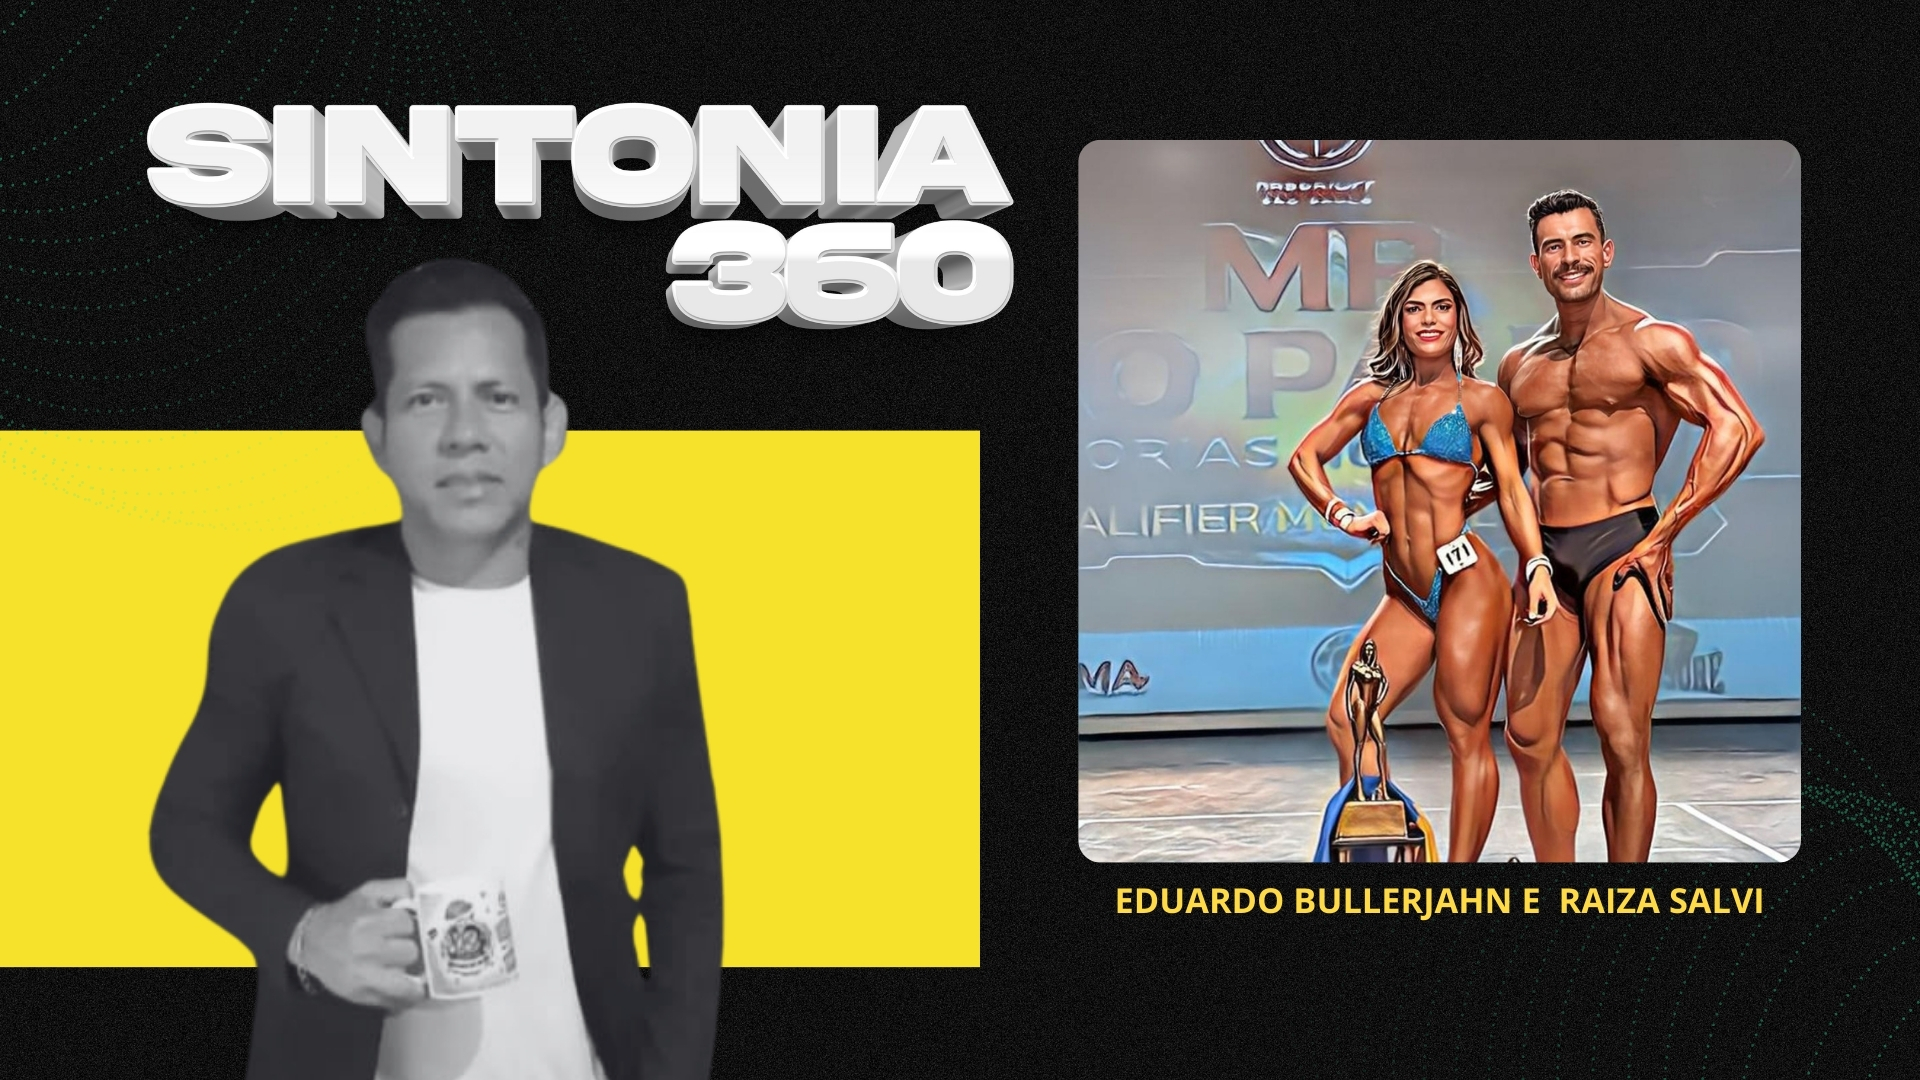 #Sintonia360 | Entrevista com Eduardo Bullerjahn e Raiza Salvi - fisiculturistas - News Rondônia